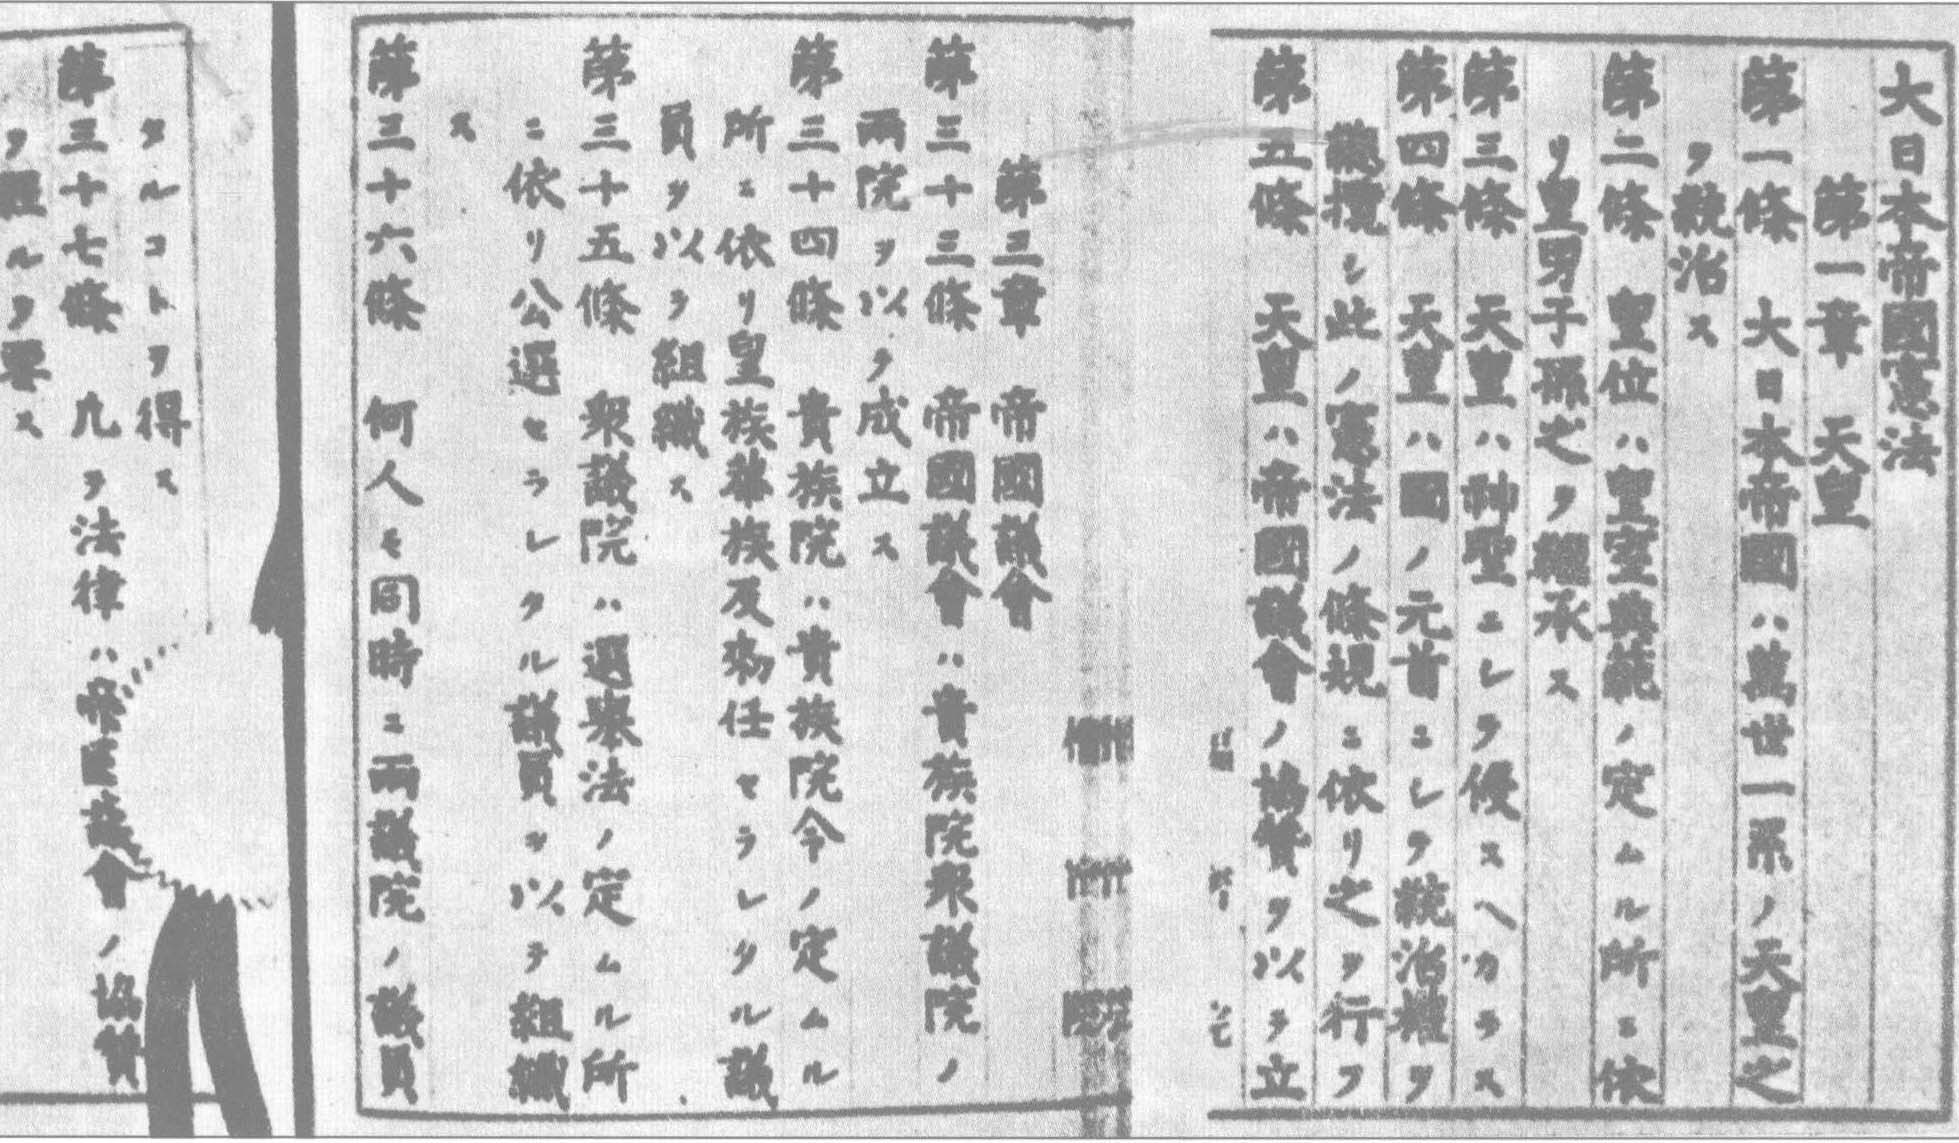 1889年2月11日，明治政府颁布《大日本帝国宪法》。该宪法规定:“日本帝国是由万世一系的天皇统治”，“天皇是国家元首，总揽统治权”，“天皇统帅陆、海军”，“天皇宣布交战、媾和以及缔结条约”等。明治宪法把天皇的权力推到了至高无上的地位，是日本走上军国主义道路的重要原因之一。